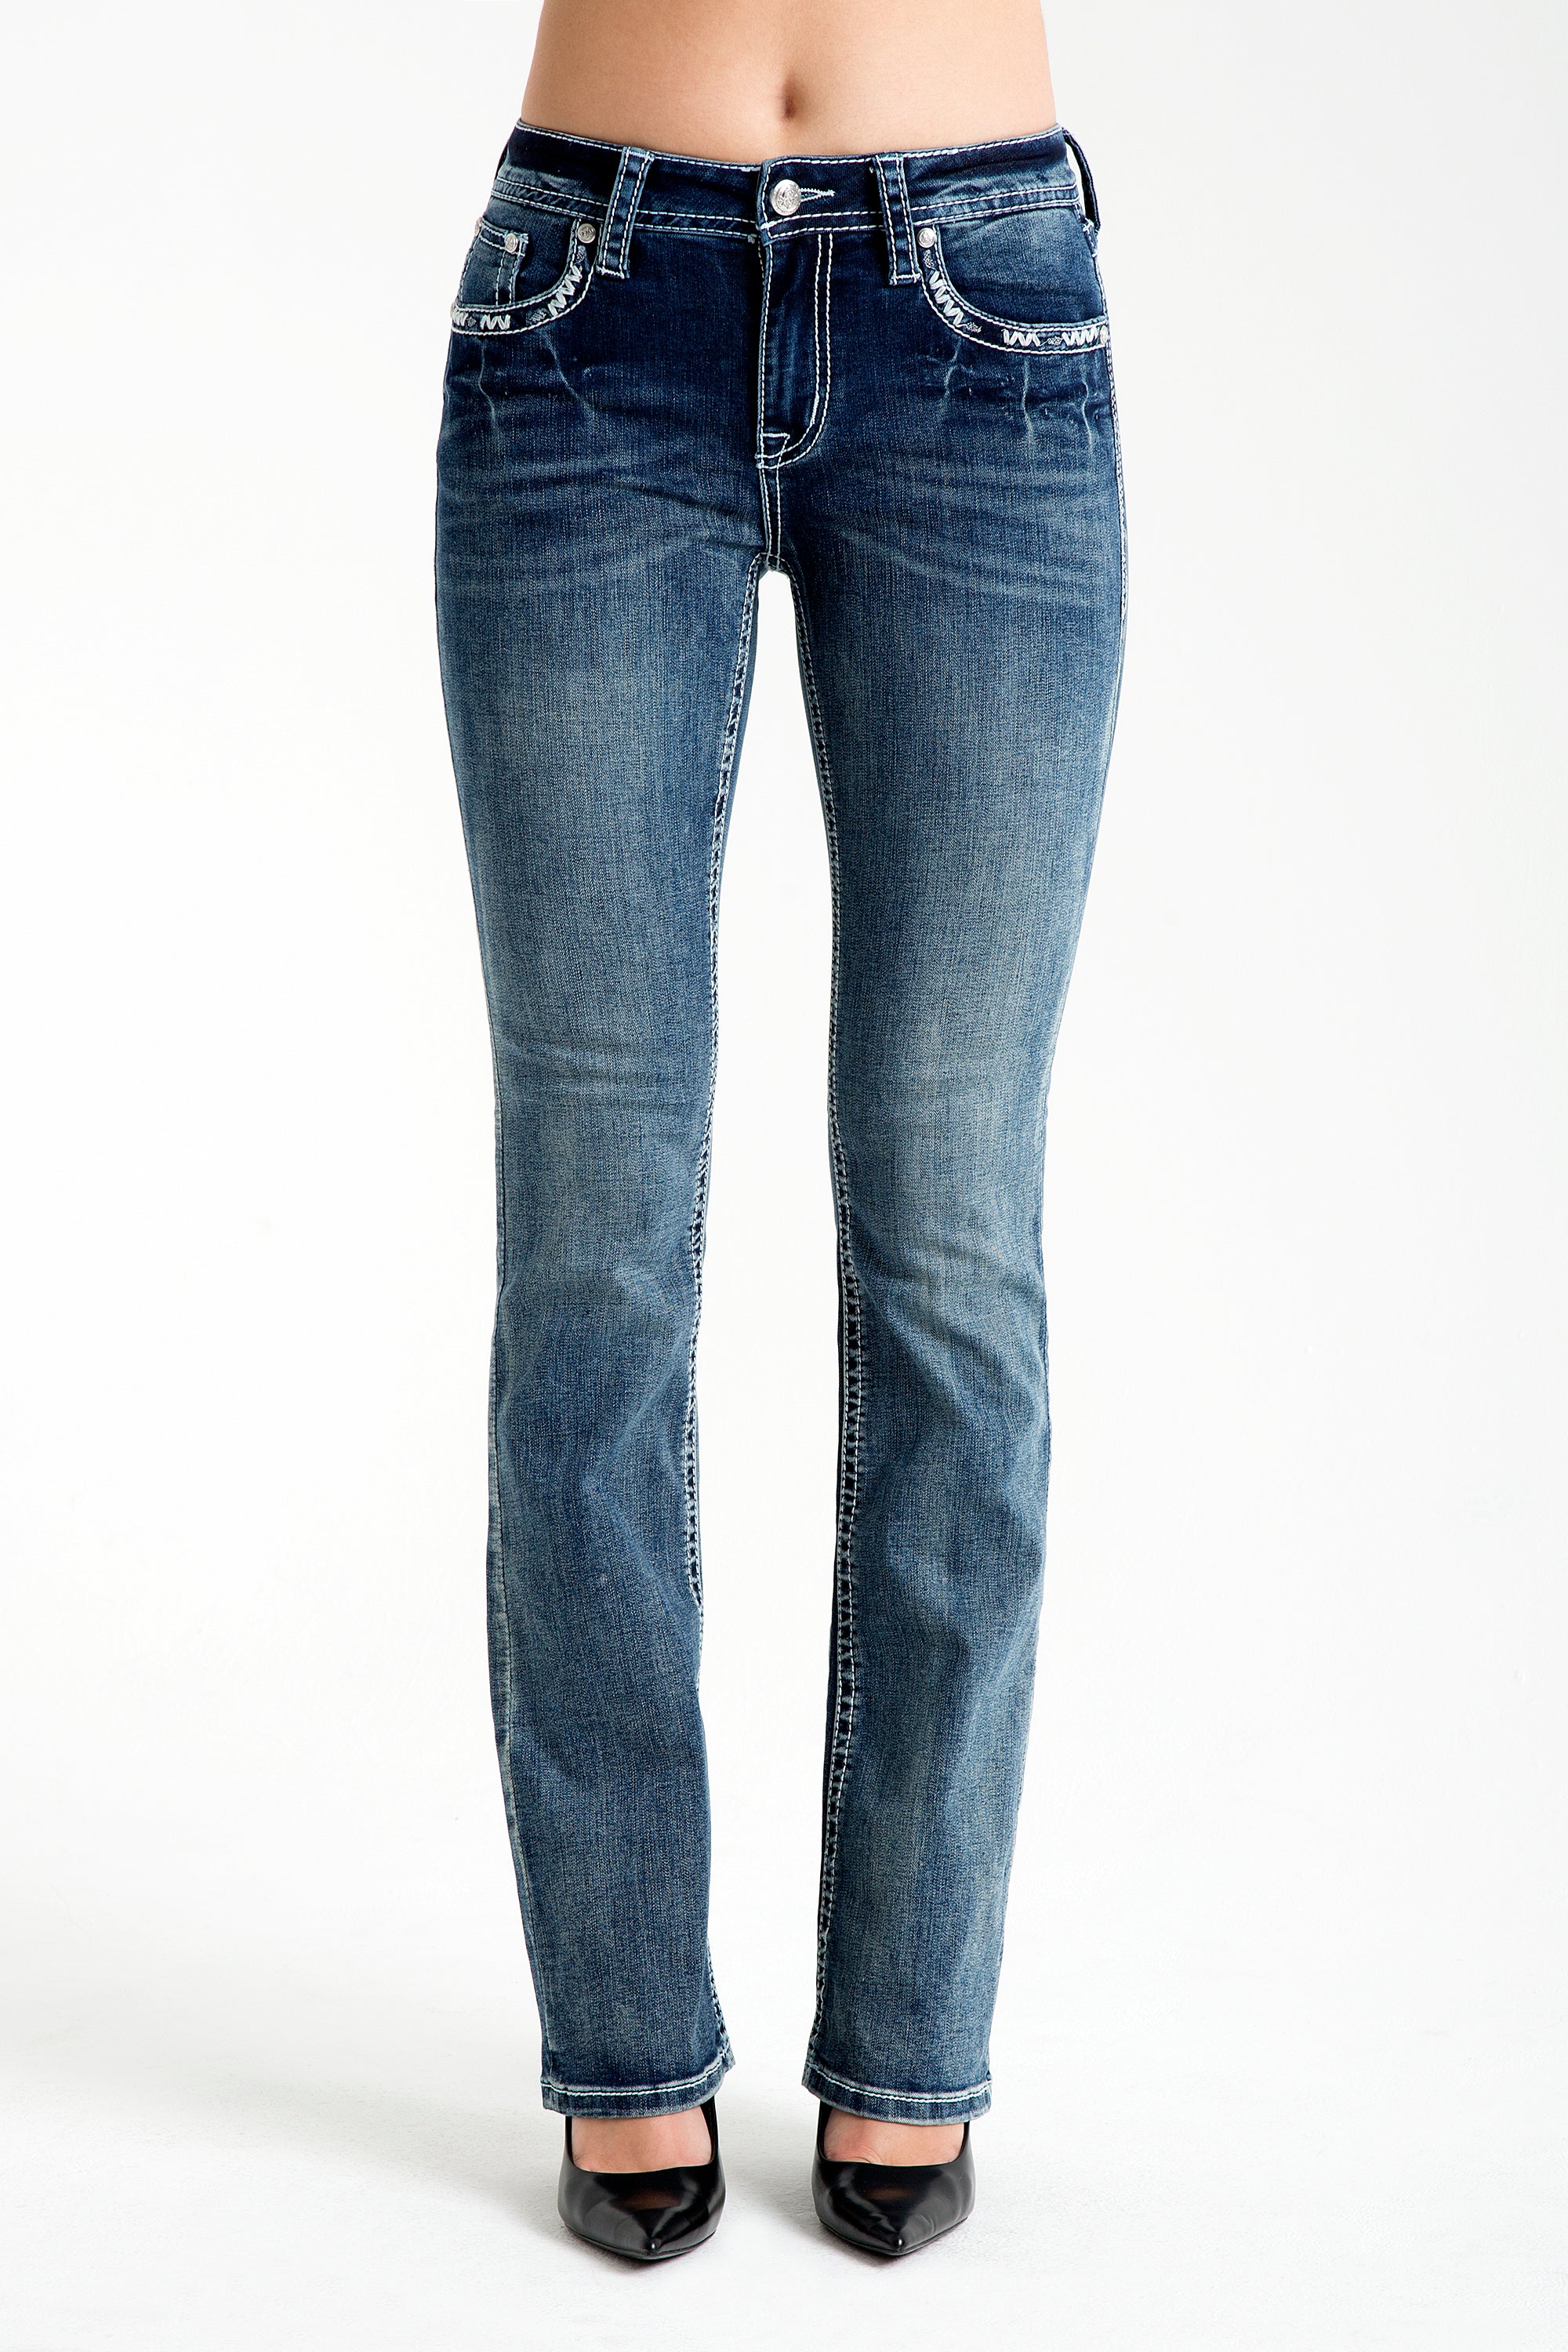 embellished-jeans-embellish-jeans